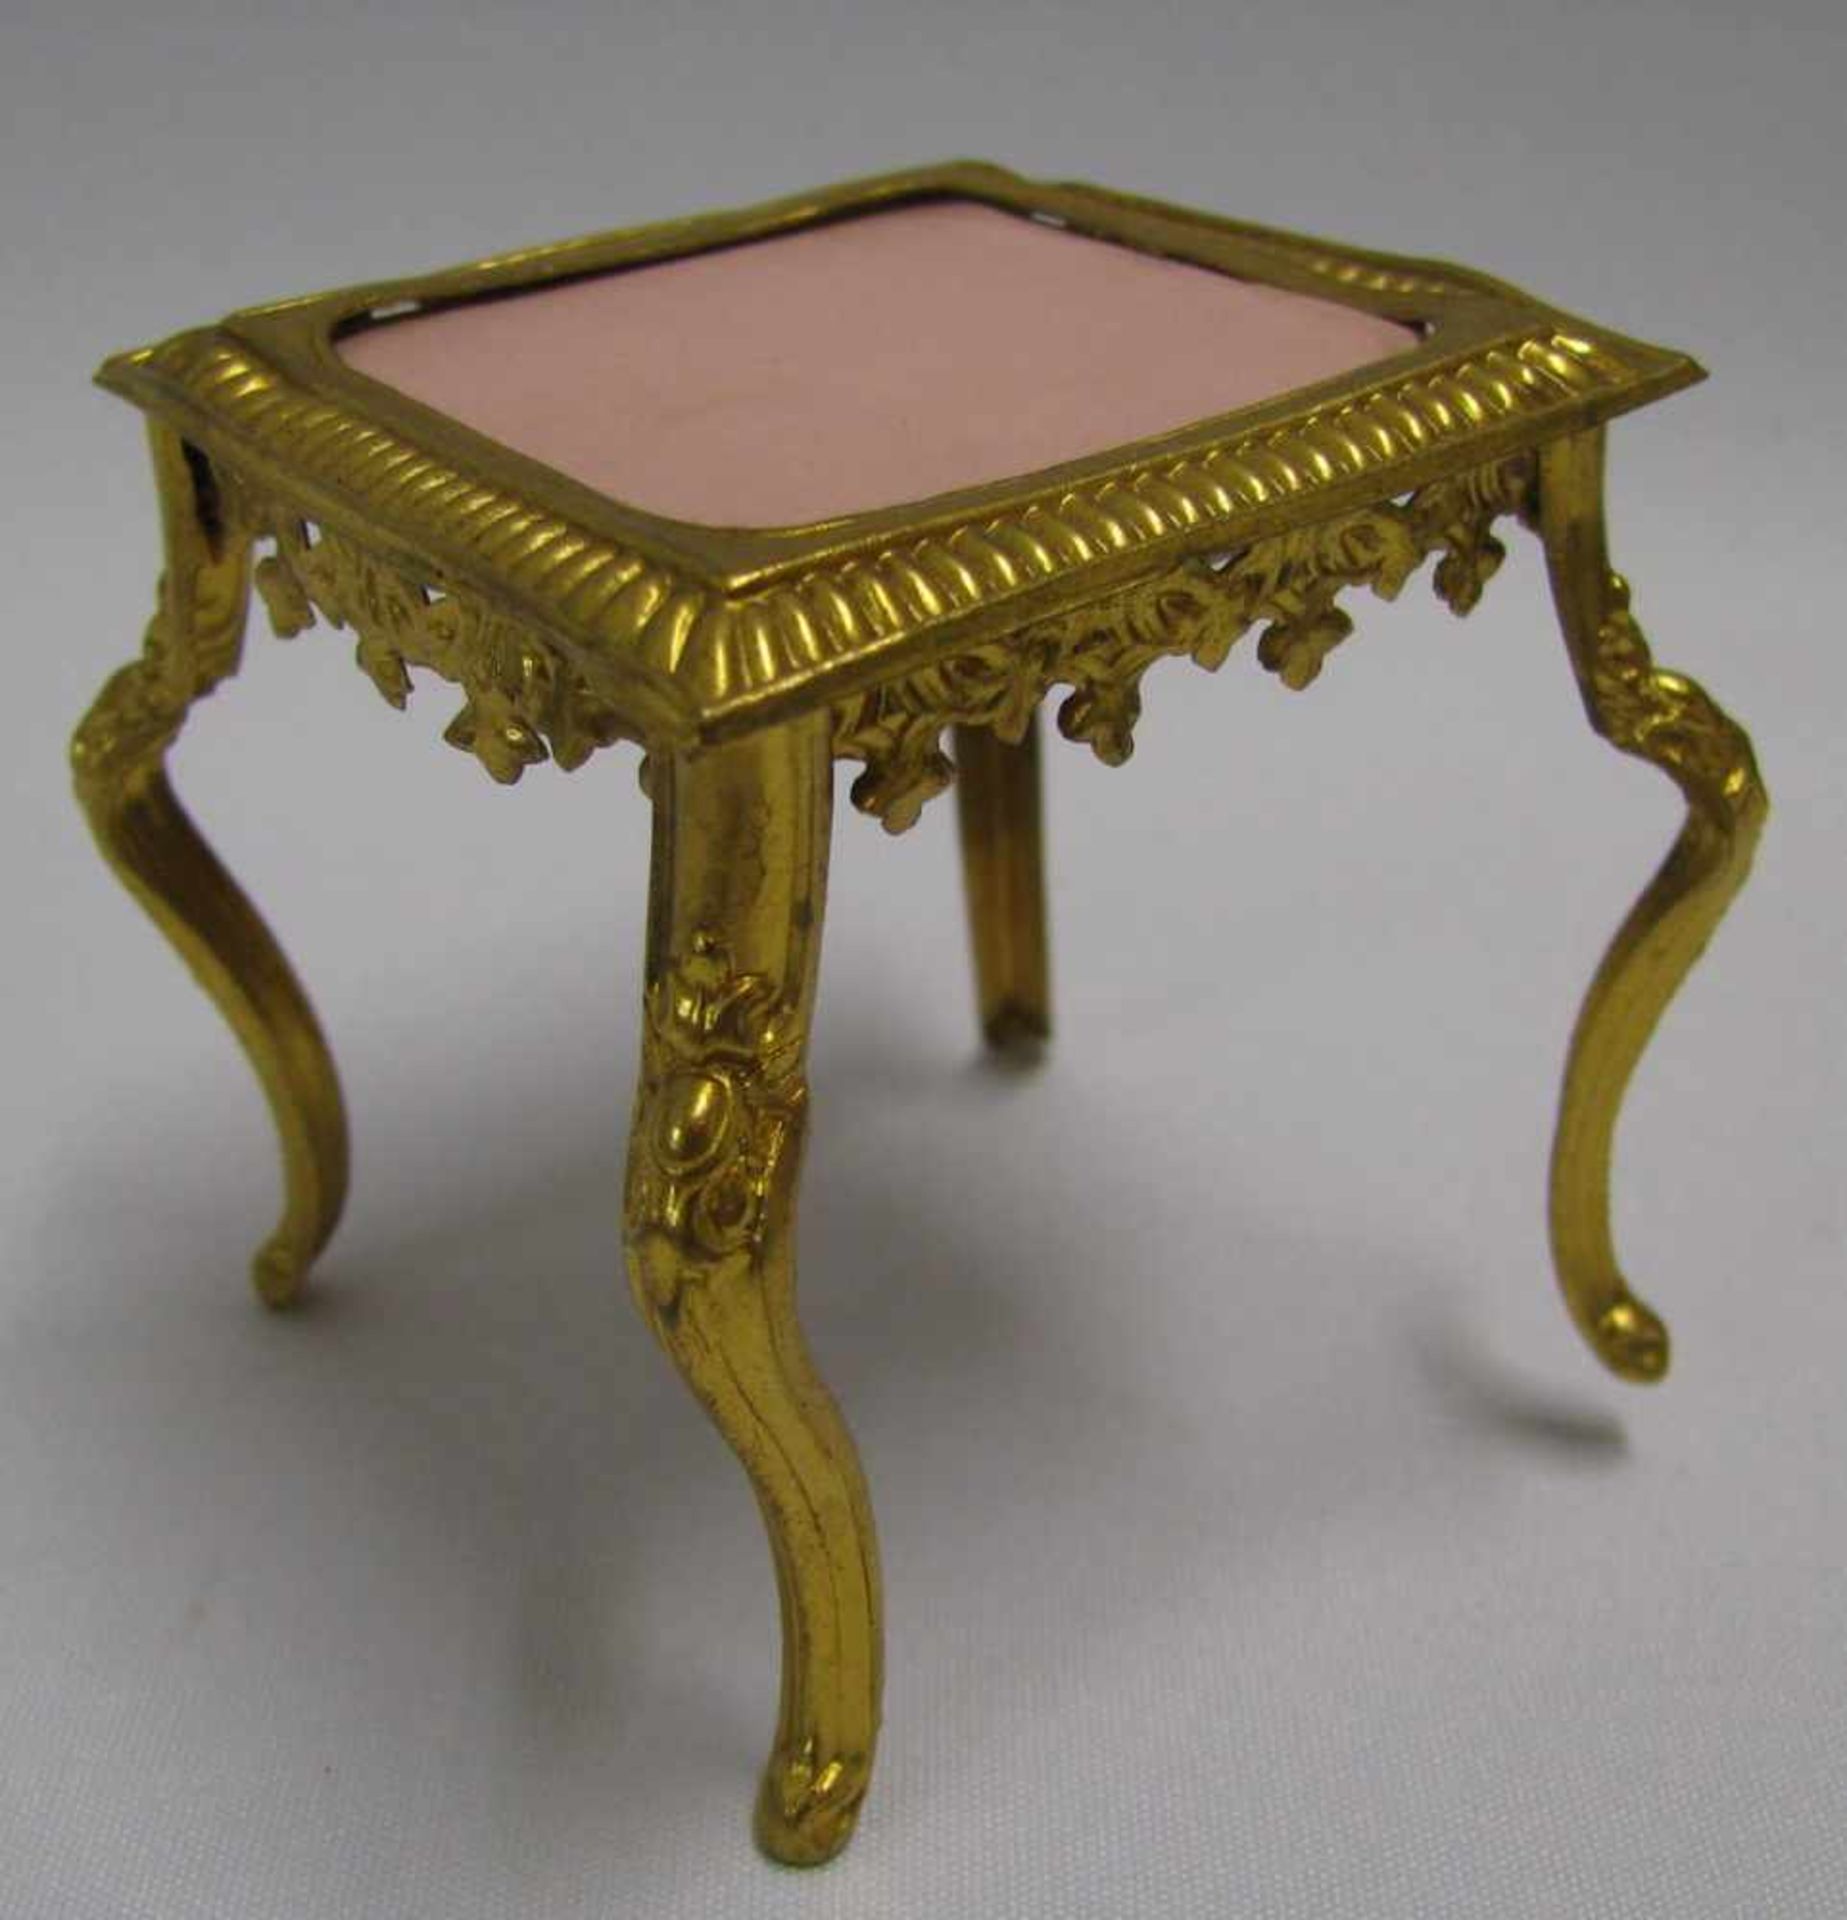 Puppenstubenzubehör, Tisch, um 1900, Blech vergoldet, 6,5 x 5,7 x 5,7 cm.